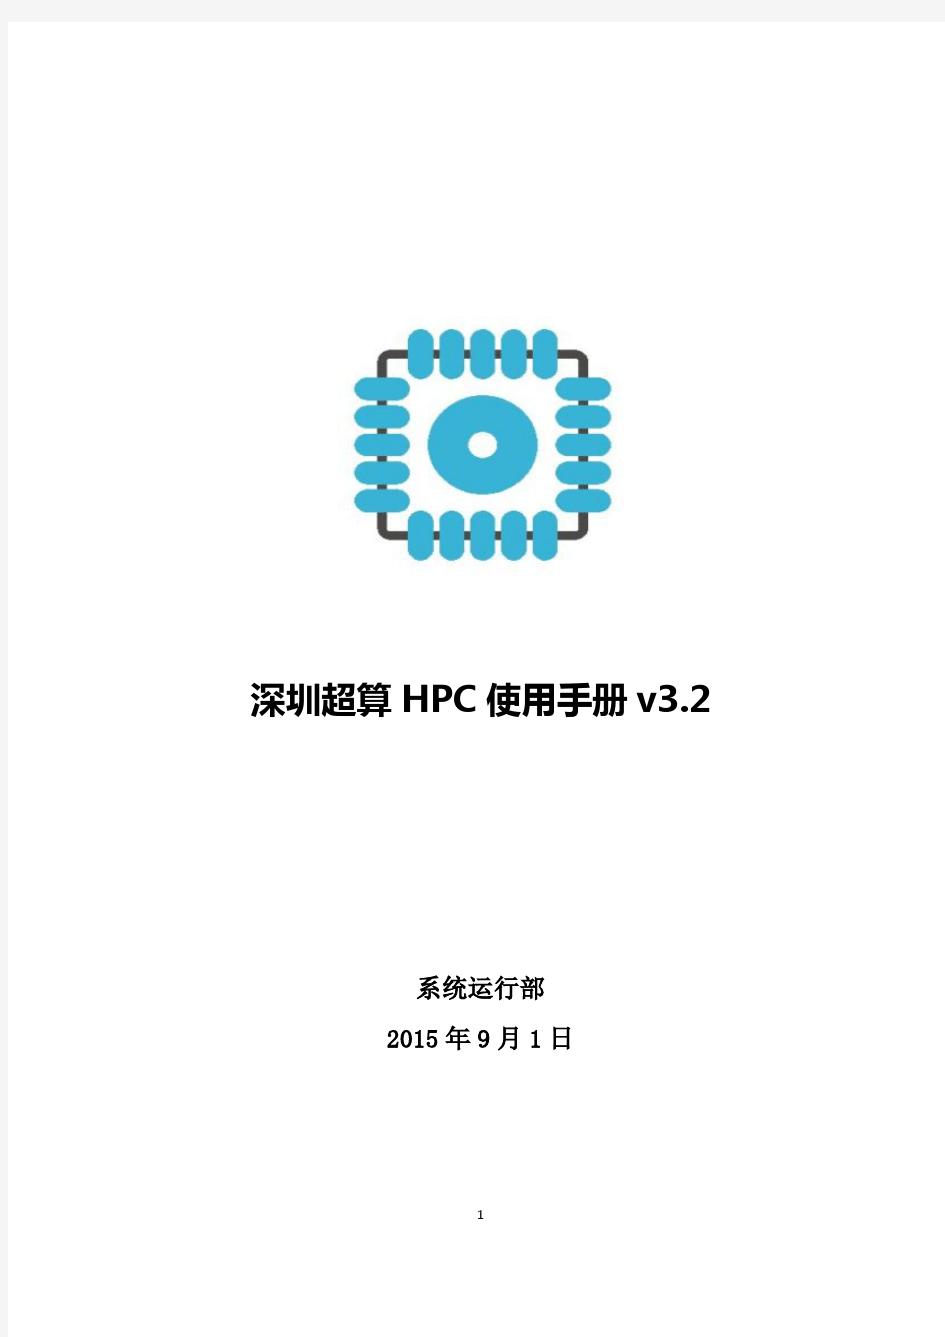 深圳超算HPC使用手册v3.2